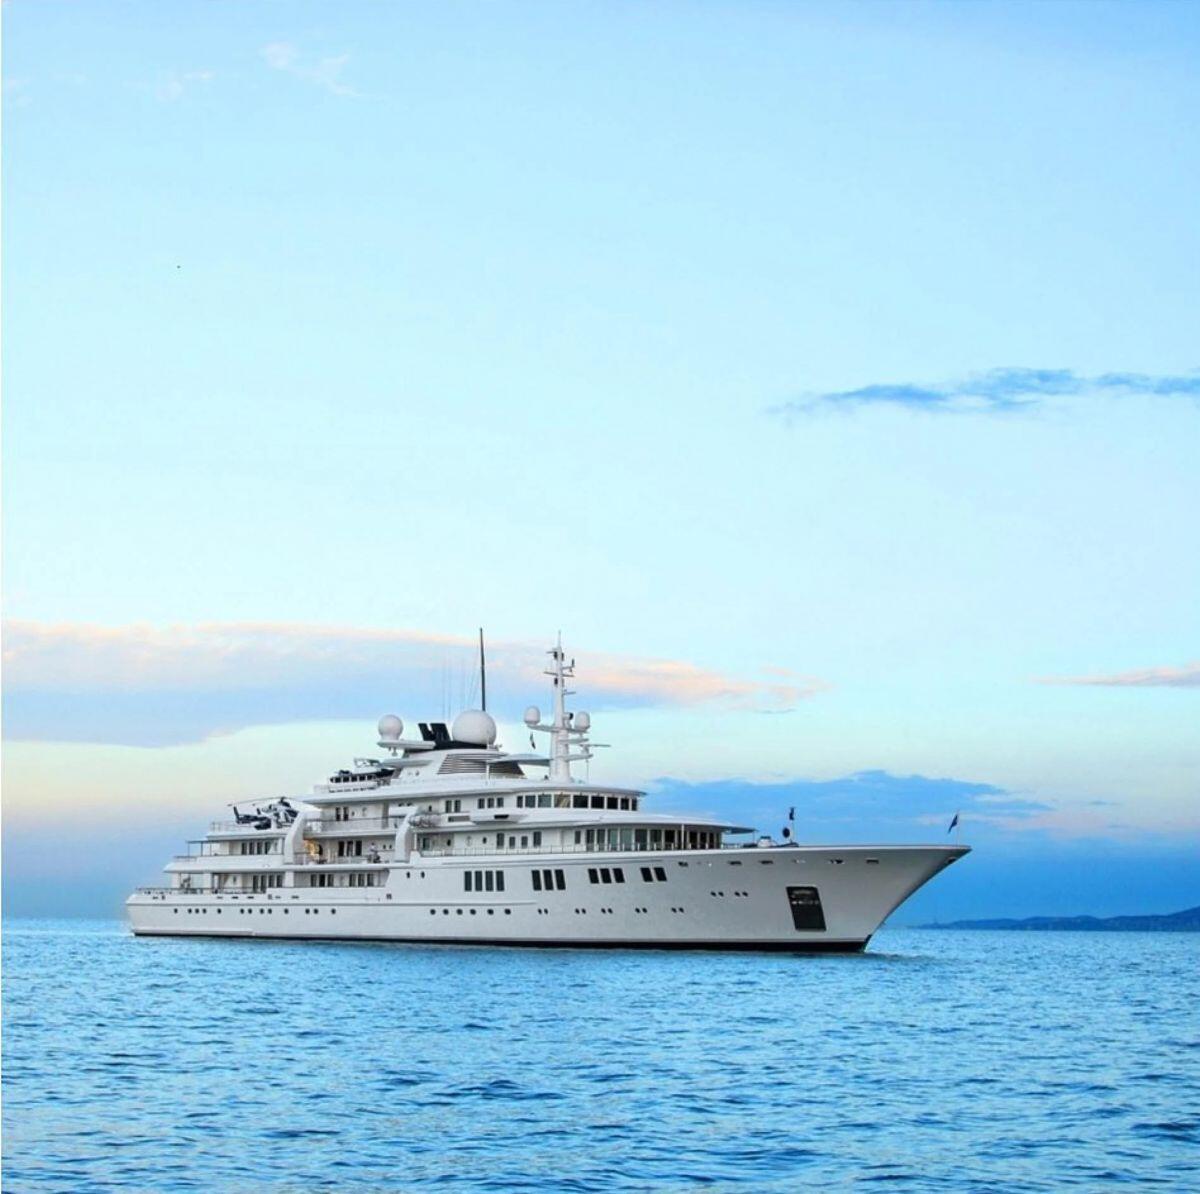 Những con tàu xa hoa bậc nhất triển lãm du thuyền Monaco, nơi quy tụ tài sản của nhà giàu thế giới